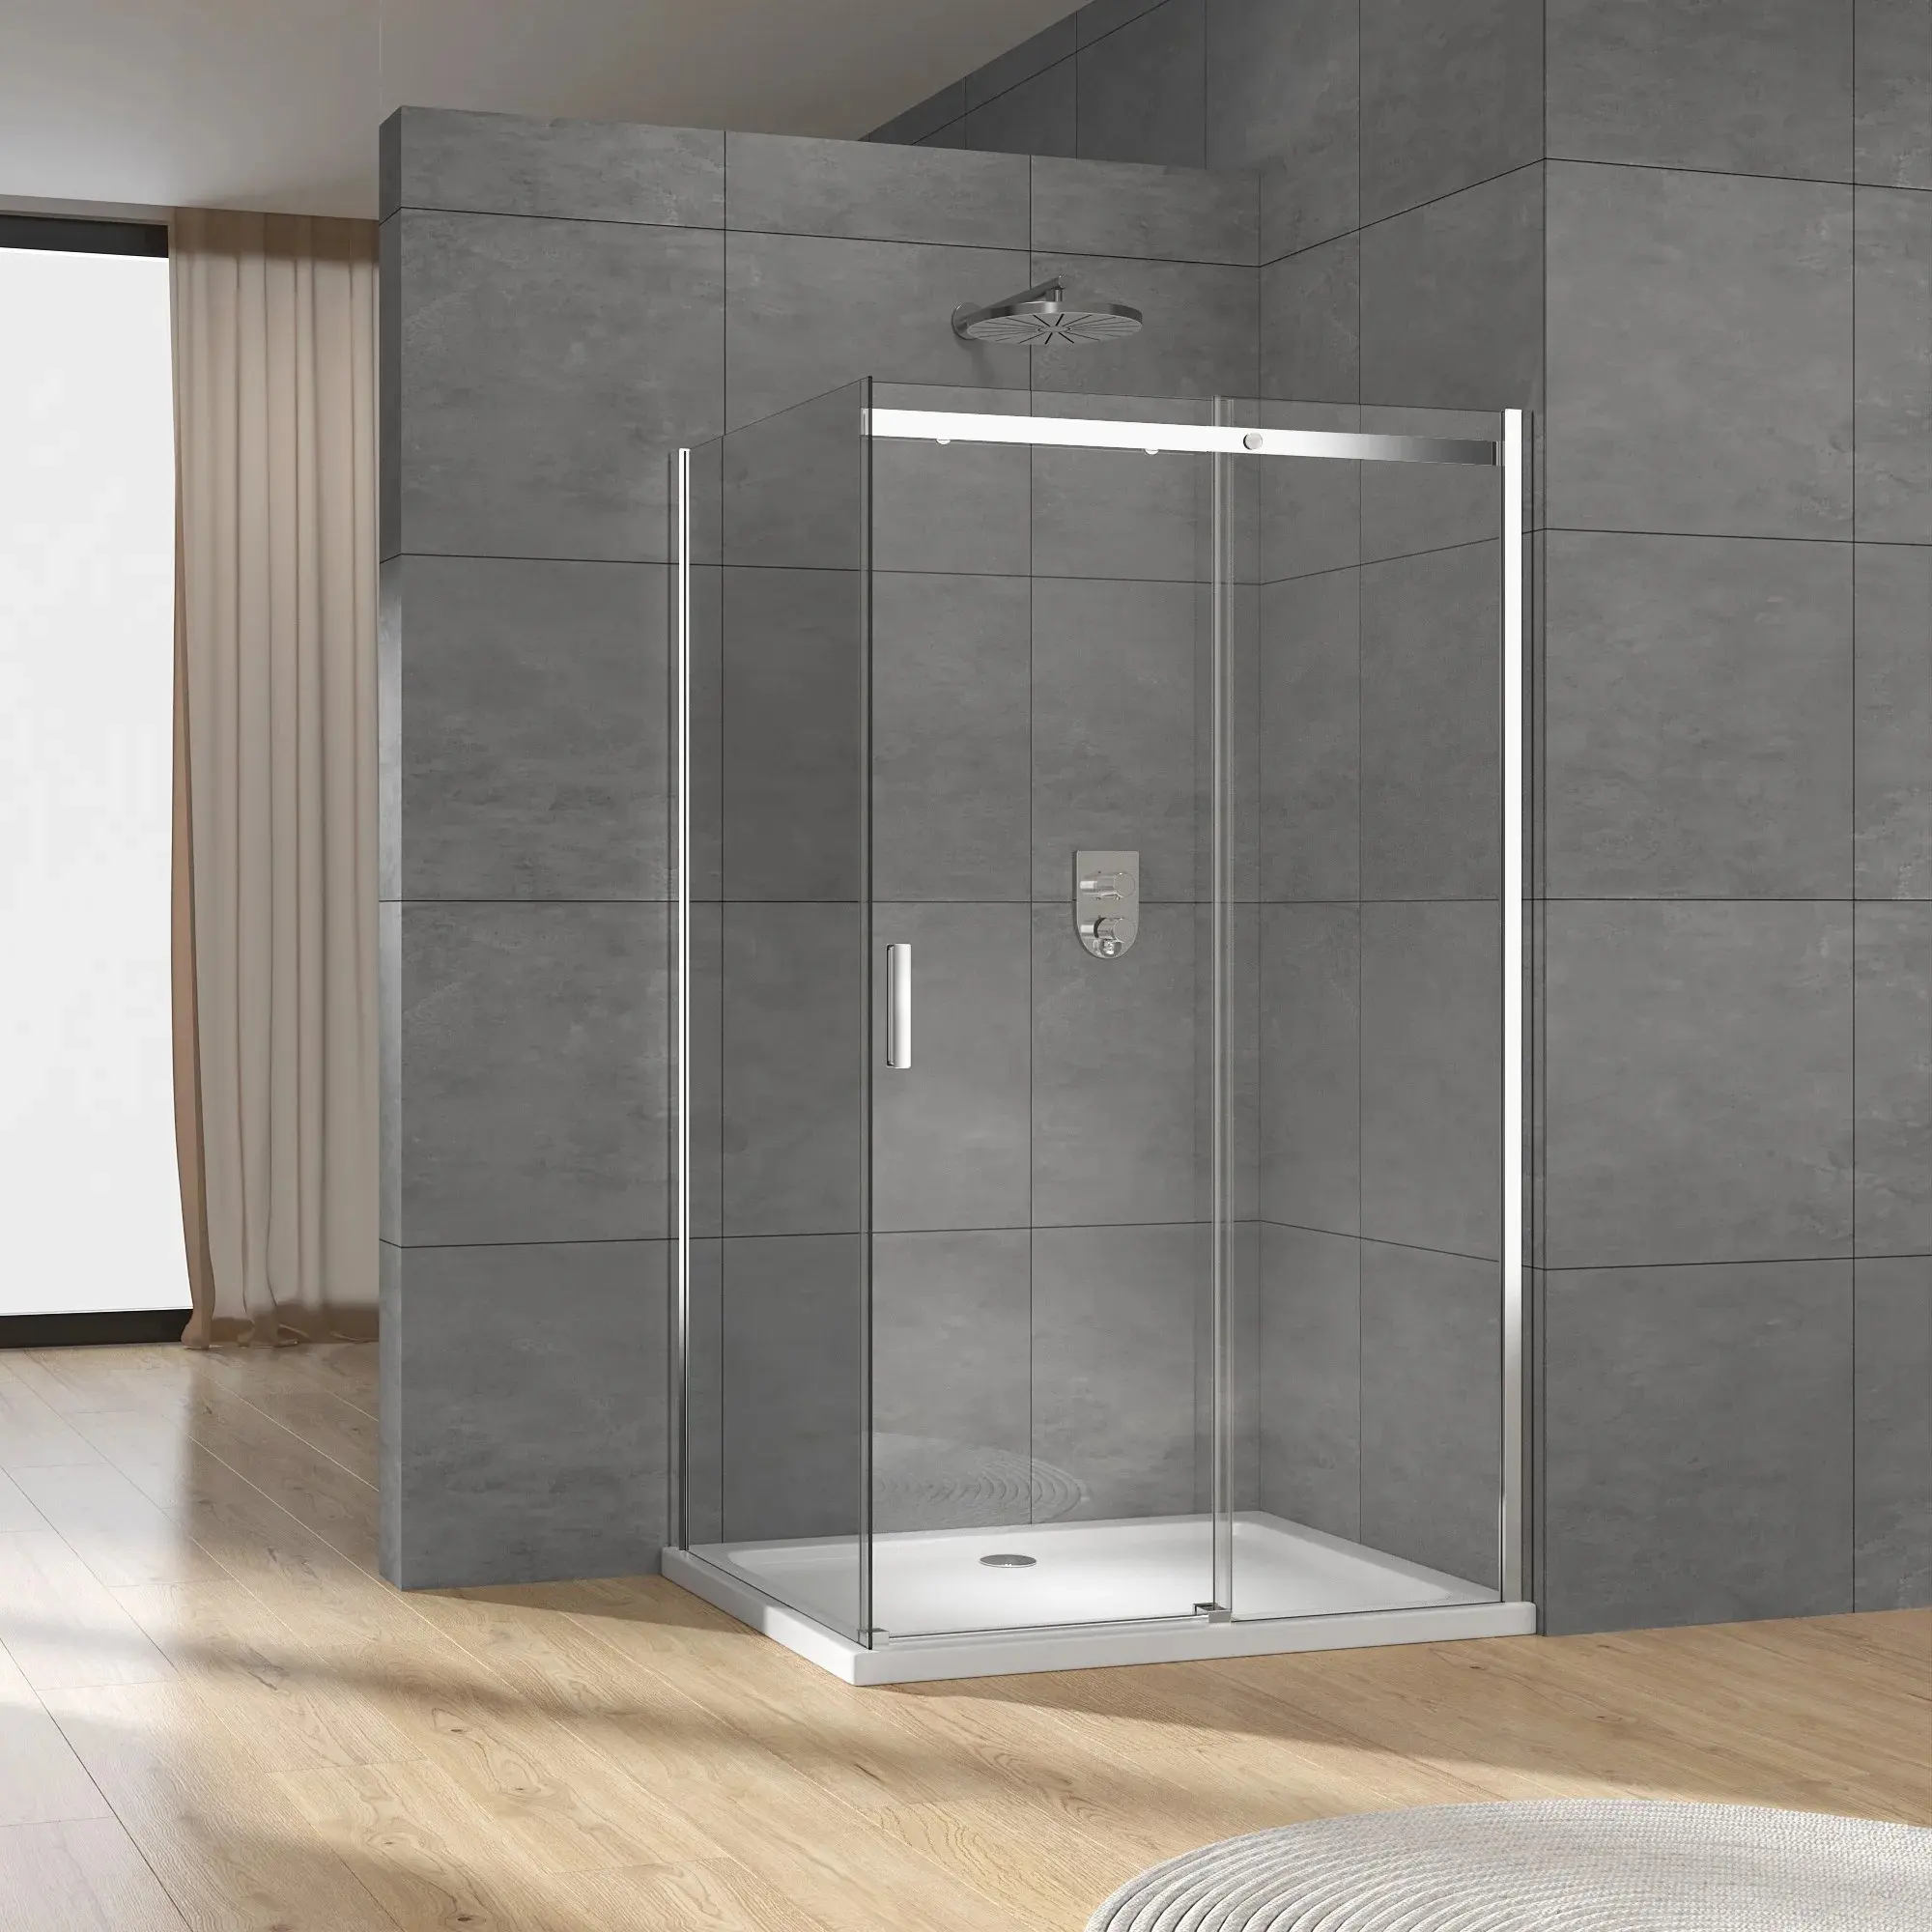 Exceed 2024 Portable Bathroom Shower Enclosure Sliding Glass Shower Enclosure Shower Room